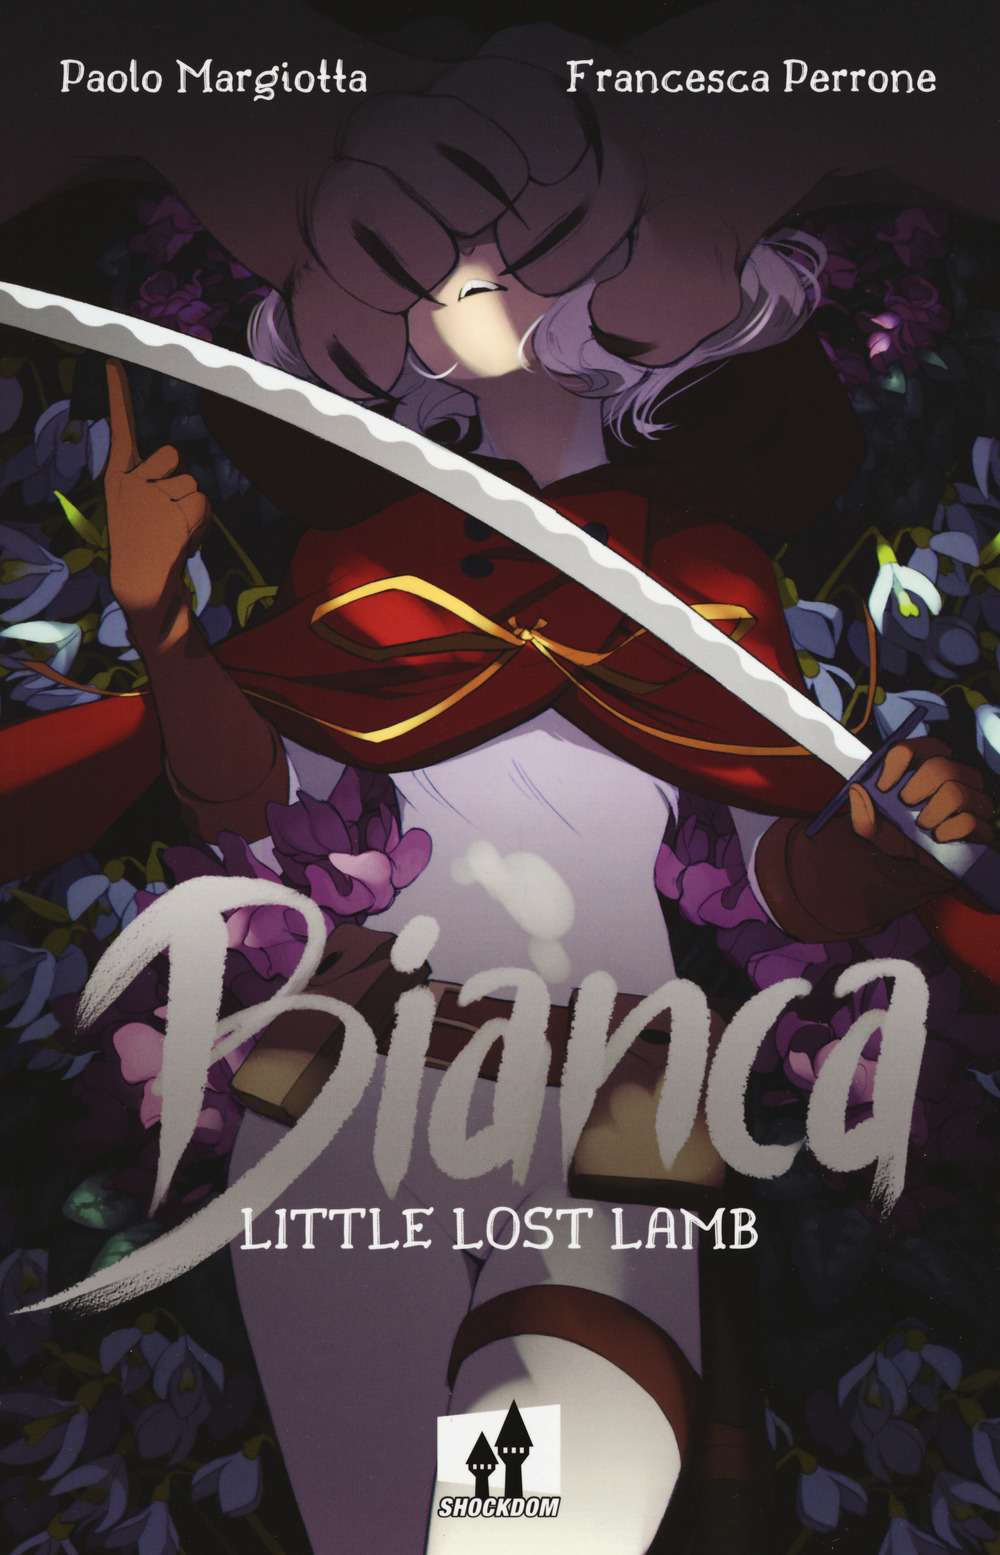 Bianca. Little lost lamb